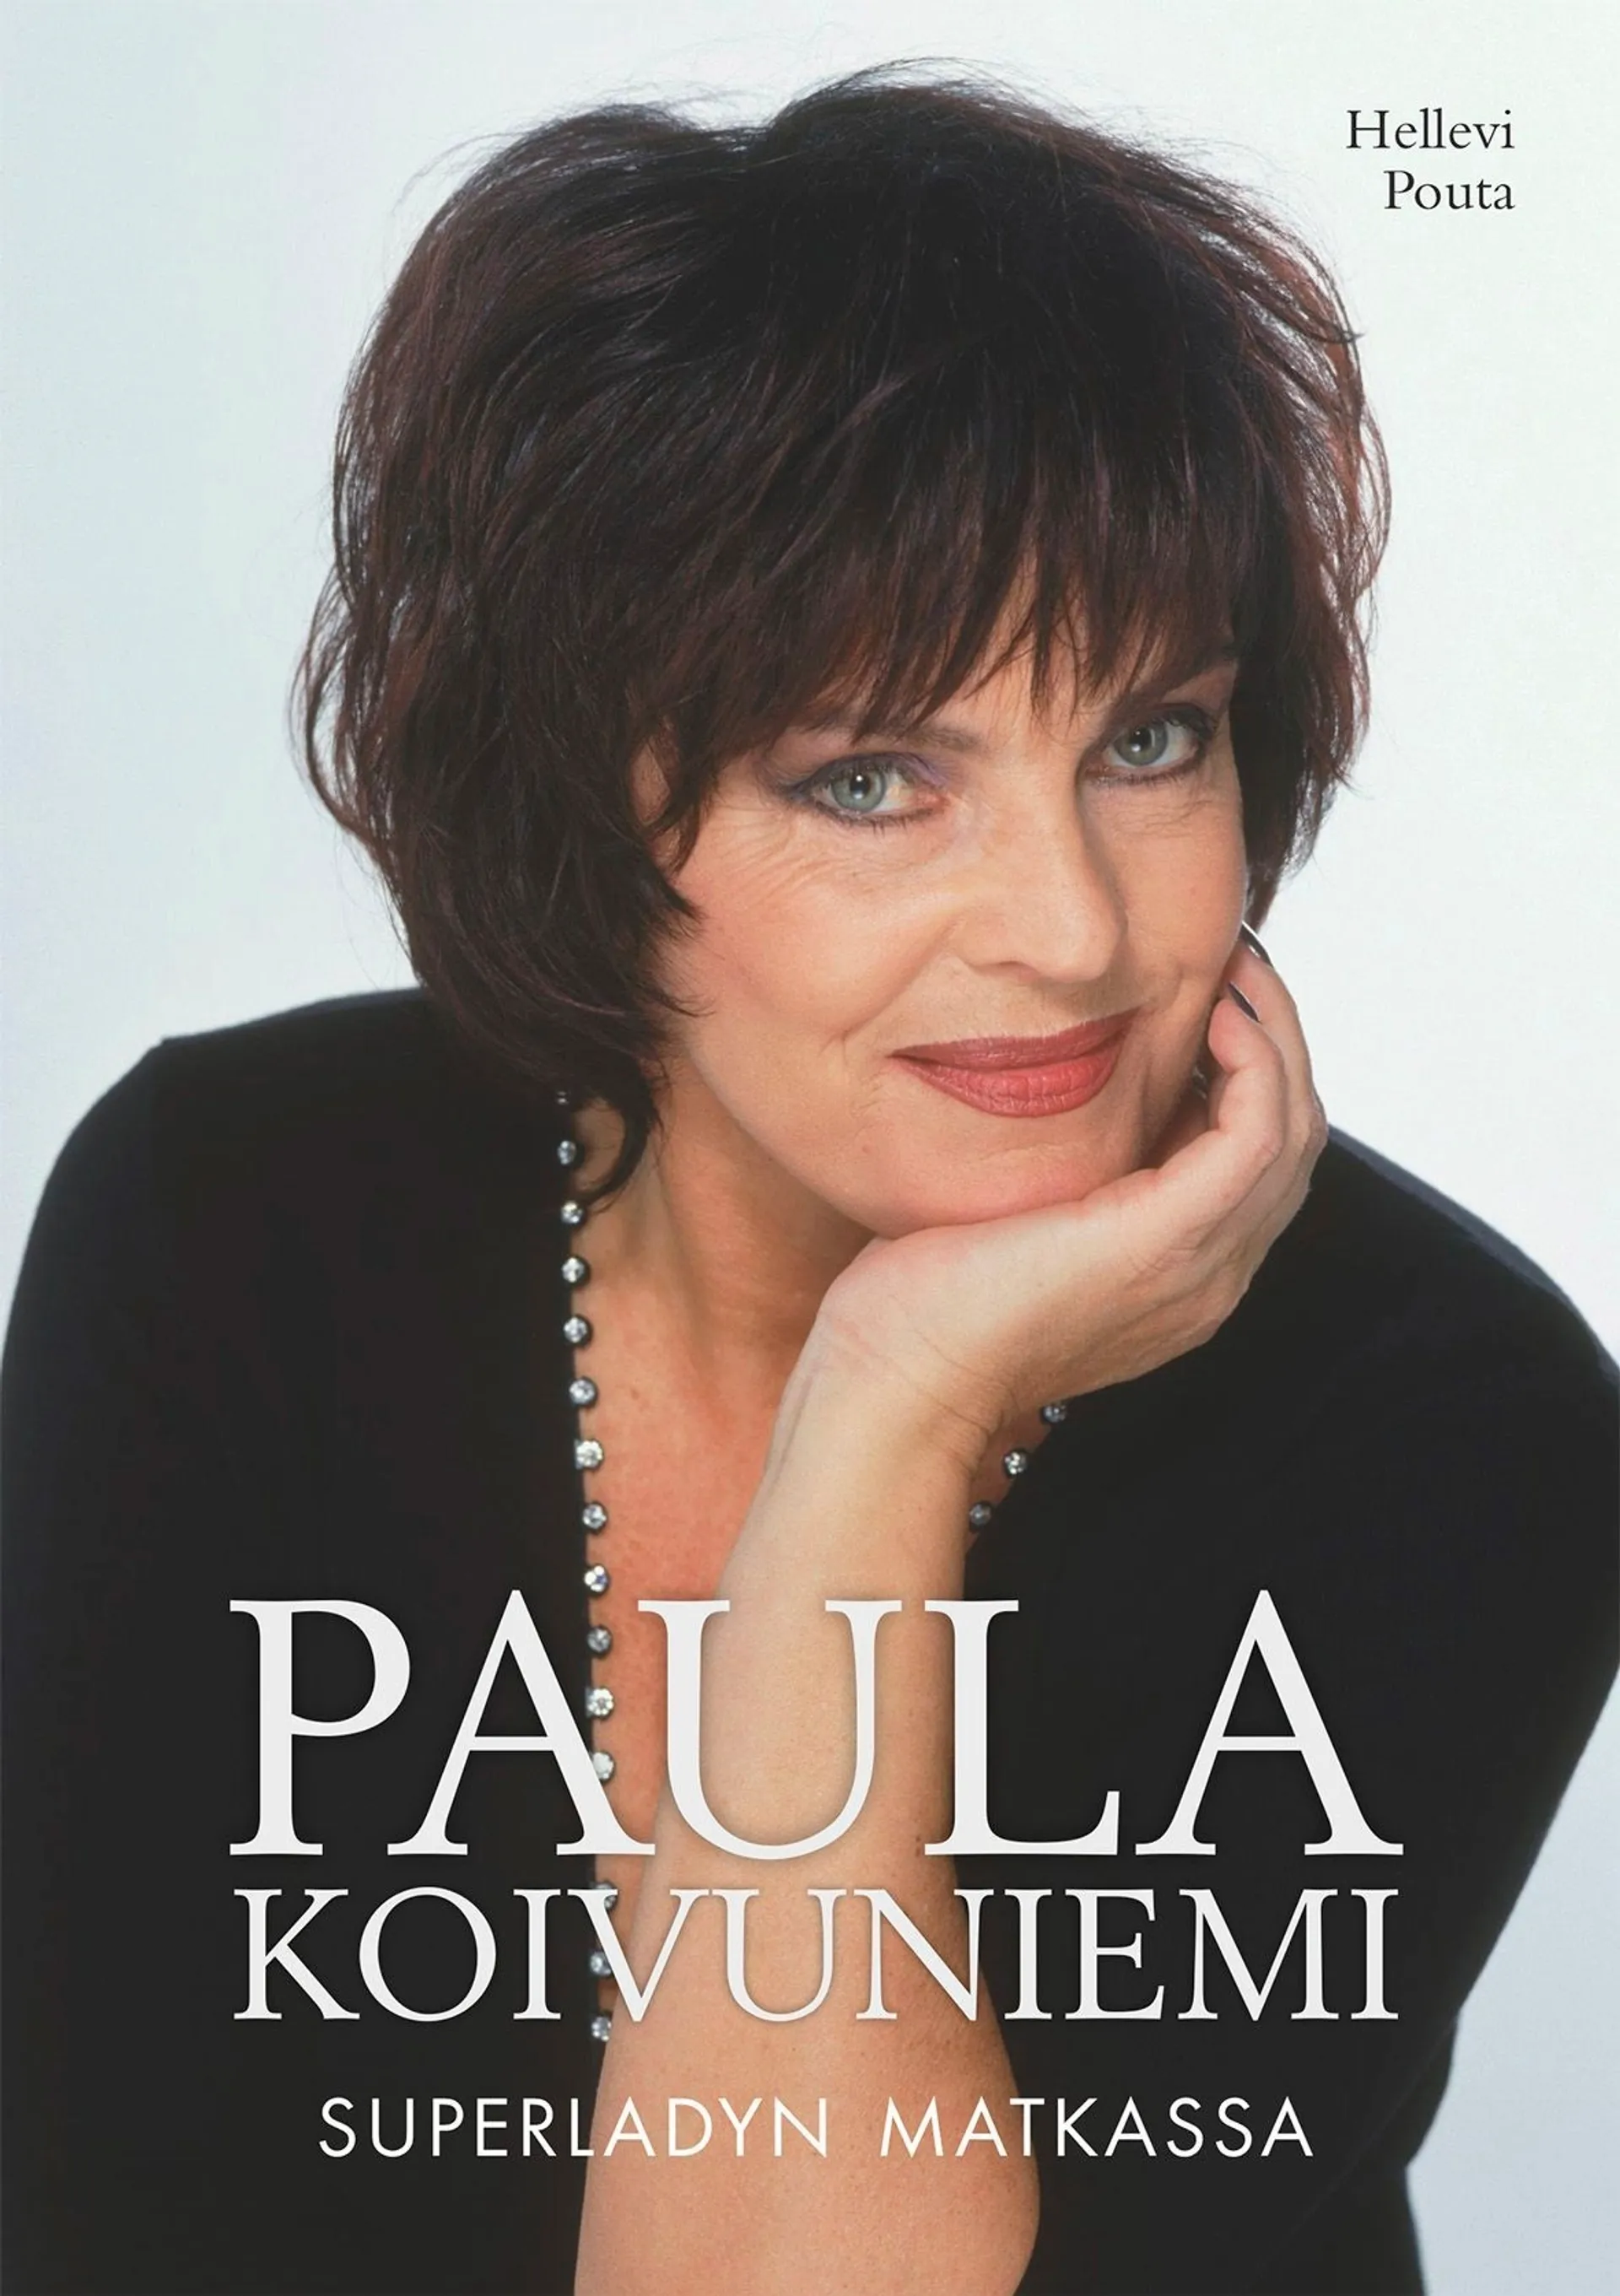 Pouta, Paula Koivuniemi - Superladyn matkassa